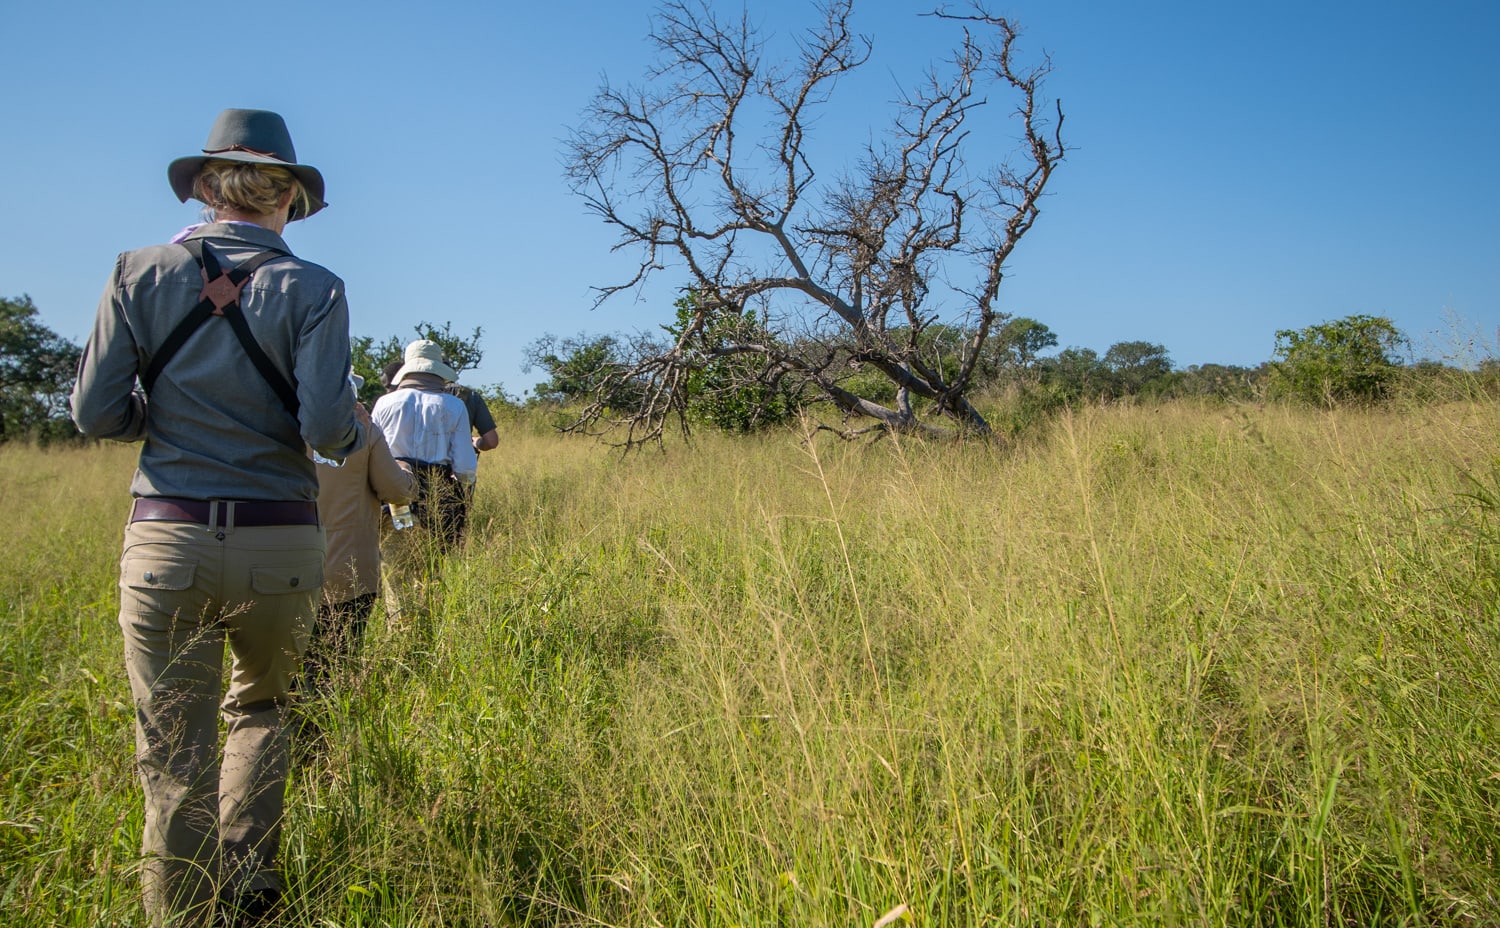 Thanda walking safari